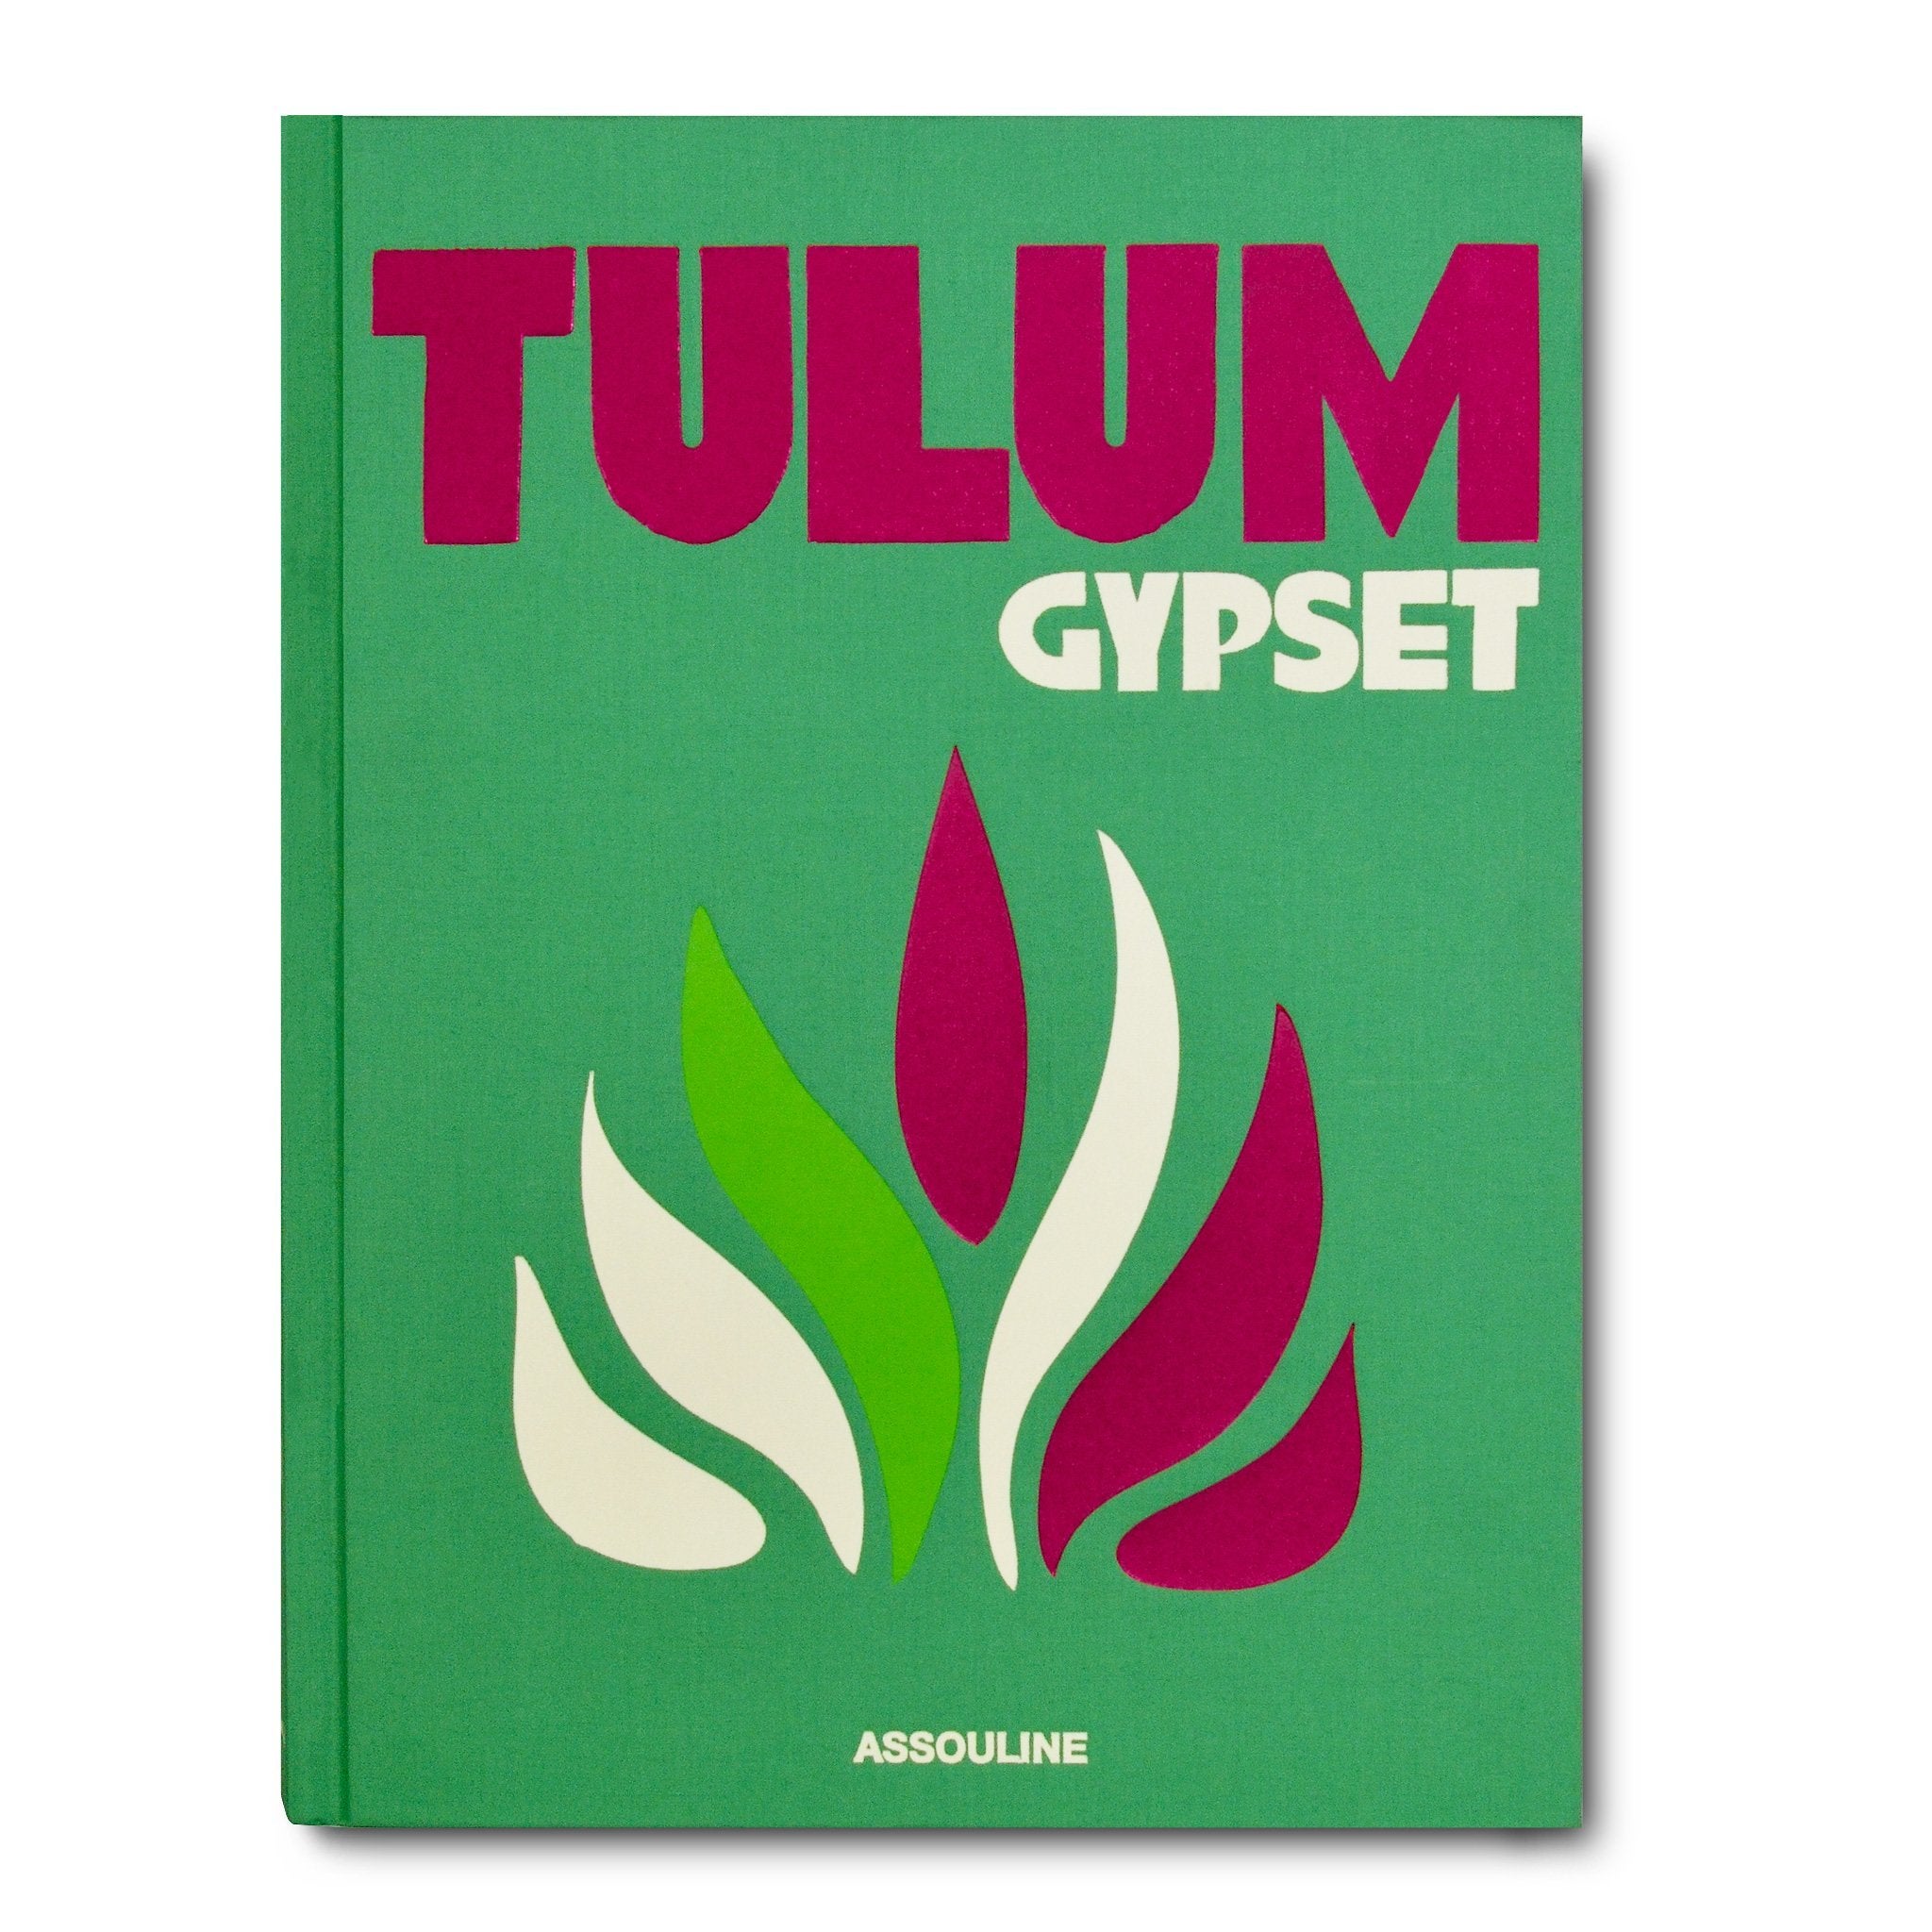 Tulum ist ein Zentrum für barfuß lebende Bohemiens und glamouröse Göttinnen, ein Maya-Refugium, das den Gypset-Lifestyle perfekt verkörpert. Eine netzunabhängige Zuflucht für kreative Nomaden, ein Spielplatz für Spiritualität und Gemeinschaft.